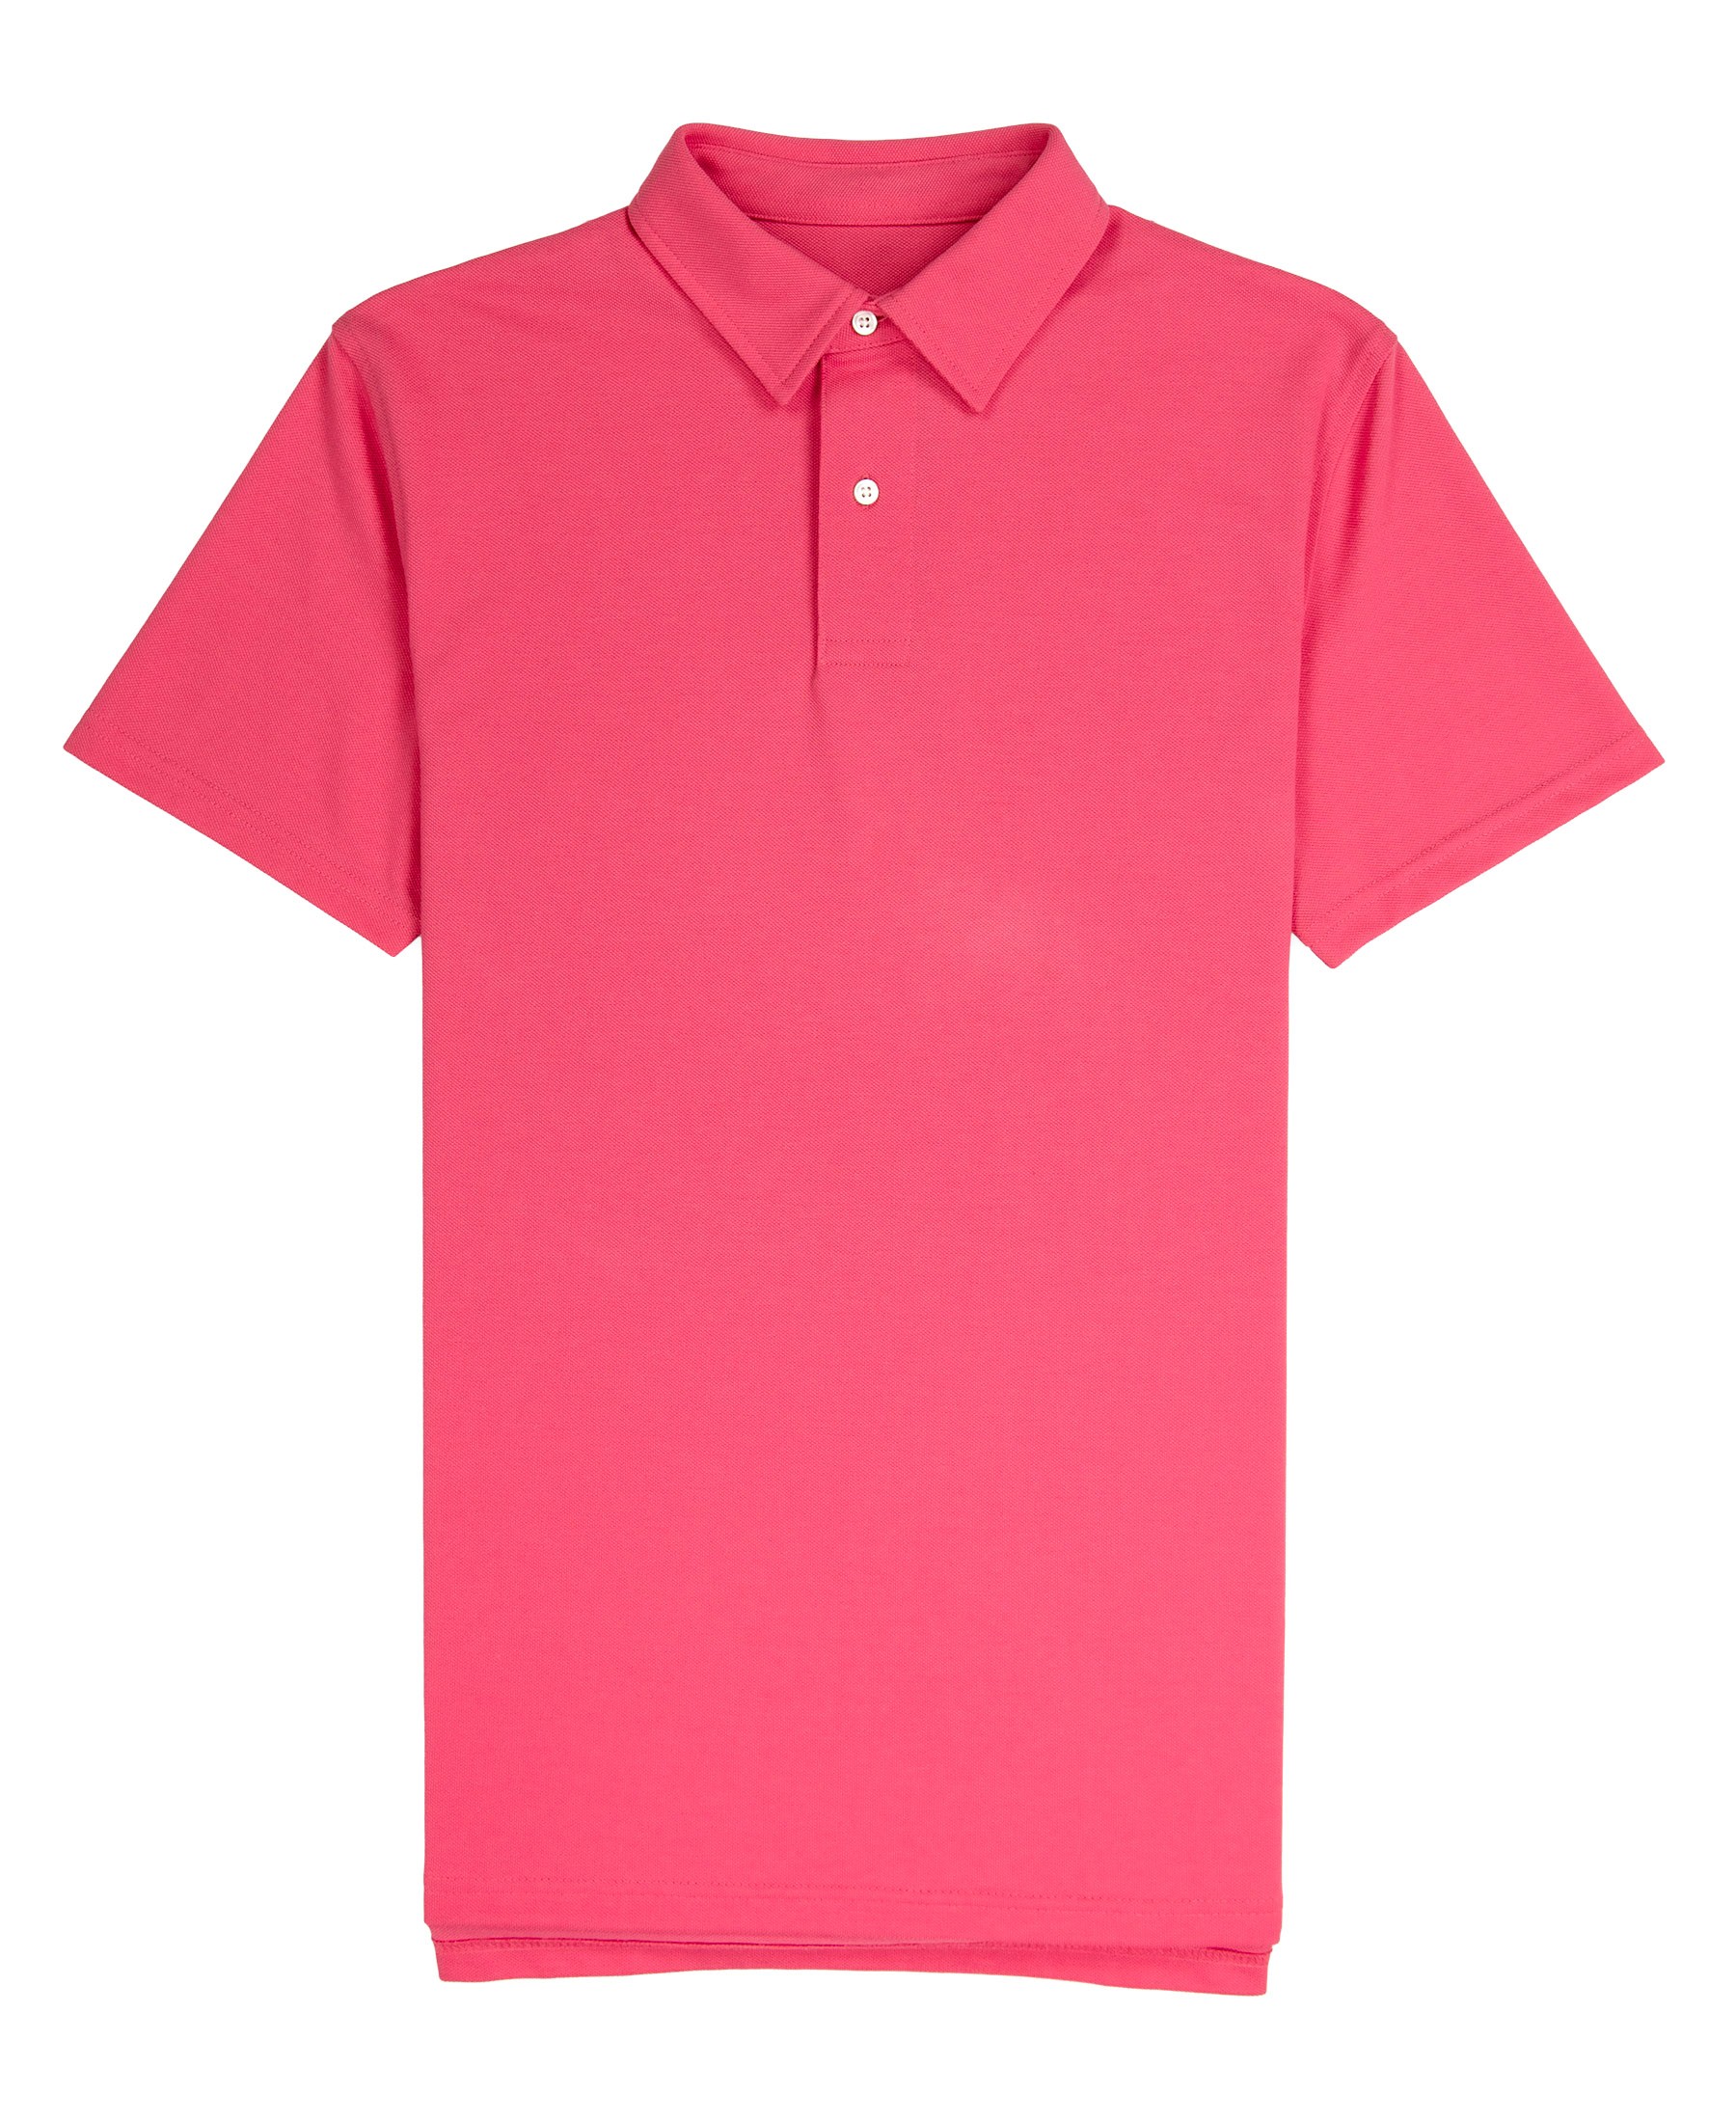 Tennis Club - Bright Pink Lightweight Pique